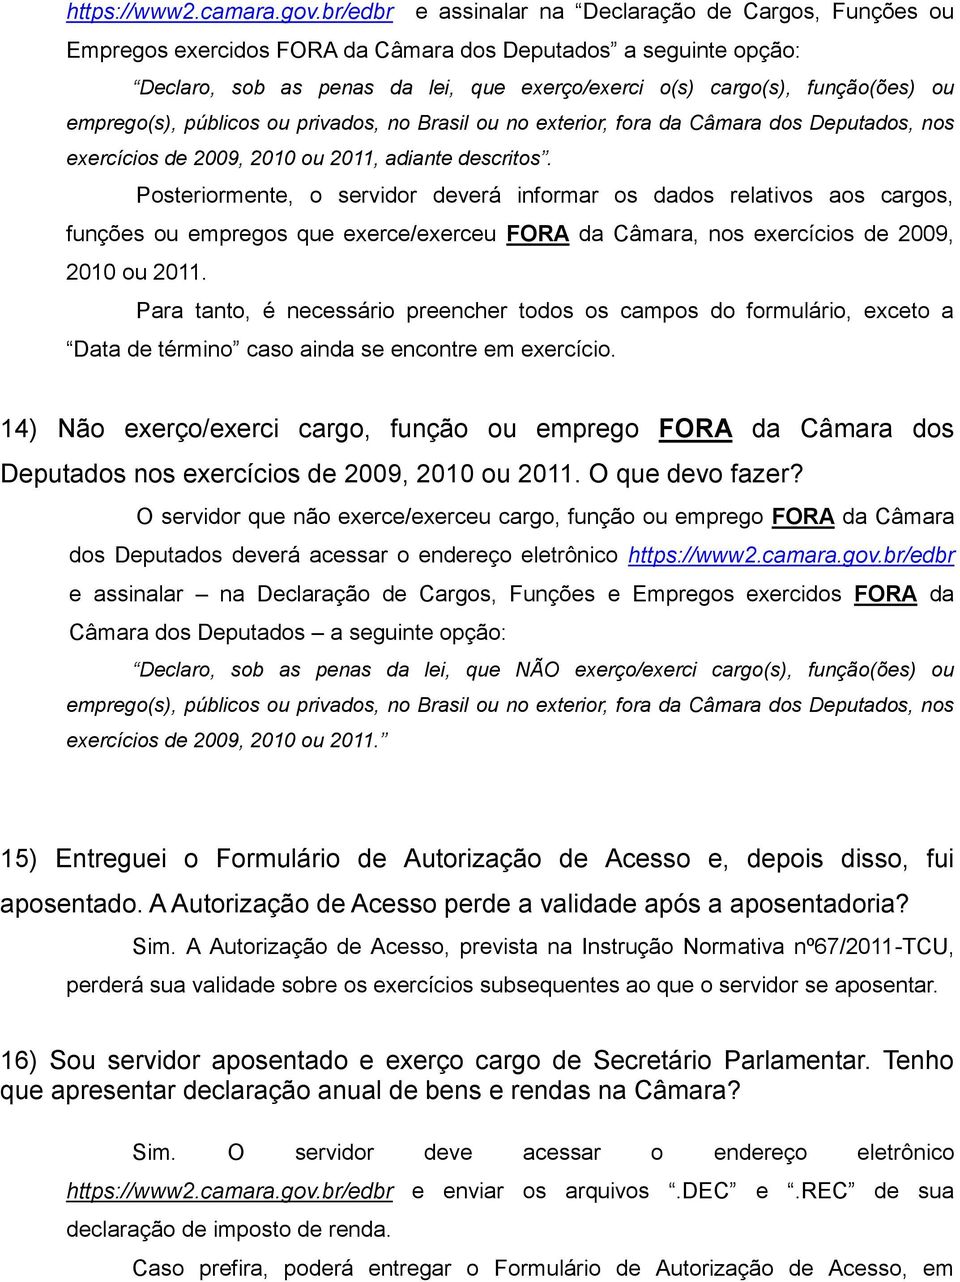 emprego(s), públicos ou privados, no Brasil ou no exterior, fora da Câmara dos Deputados, nos exercícios de 2009, 2010 ou 2011, adiante descritos.